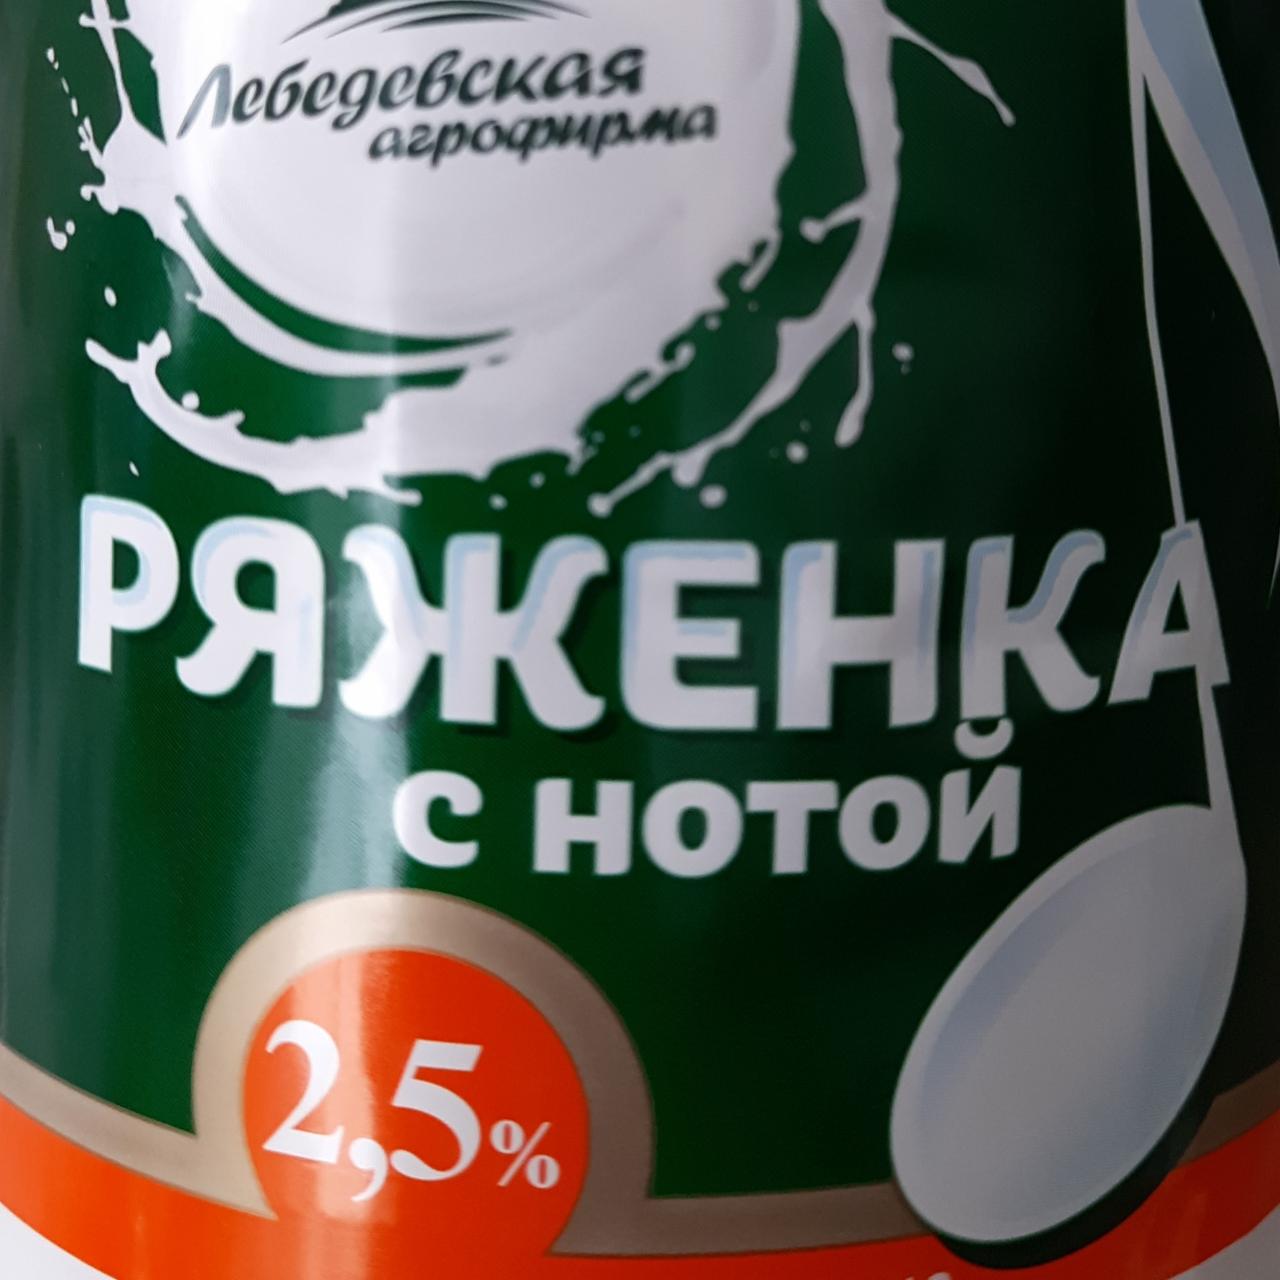 Фото - Ряженка с нотой 2.5% Лебедевская агрофирма